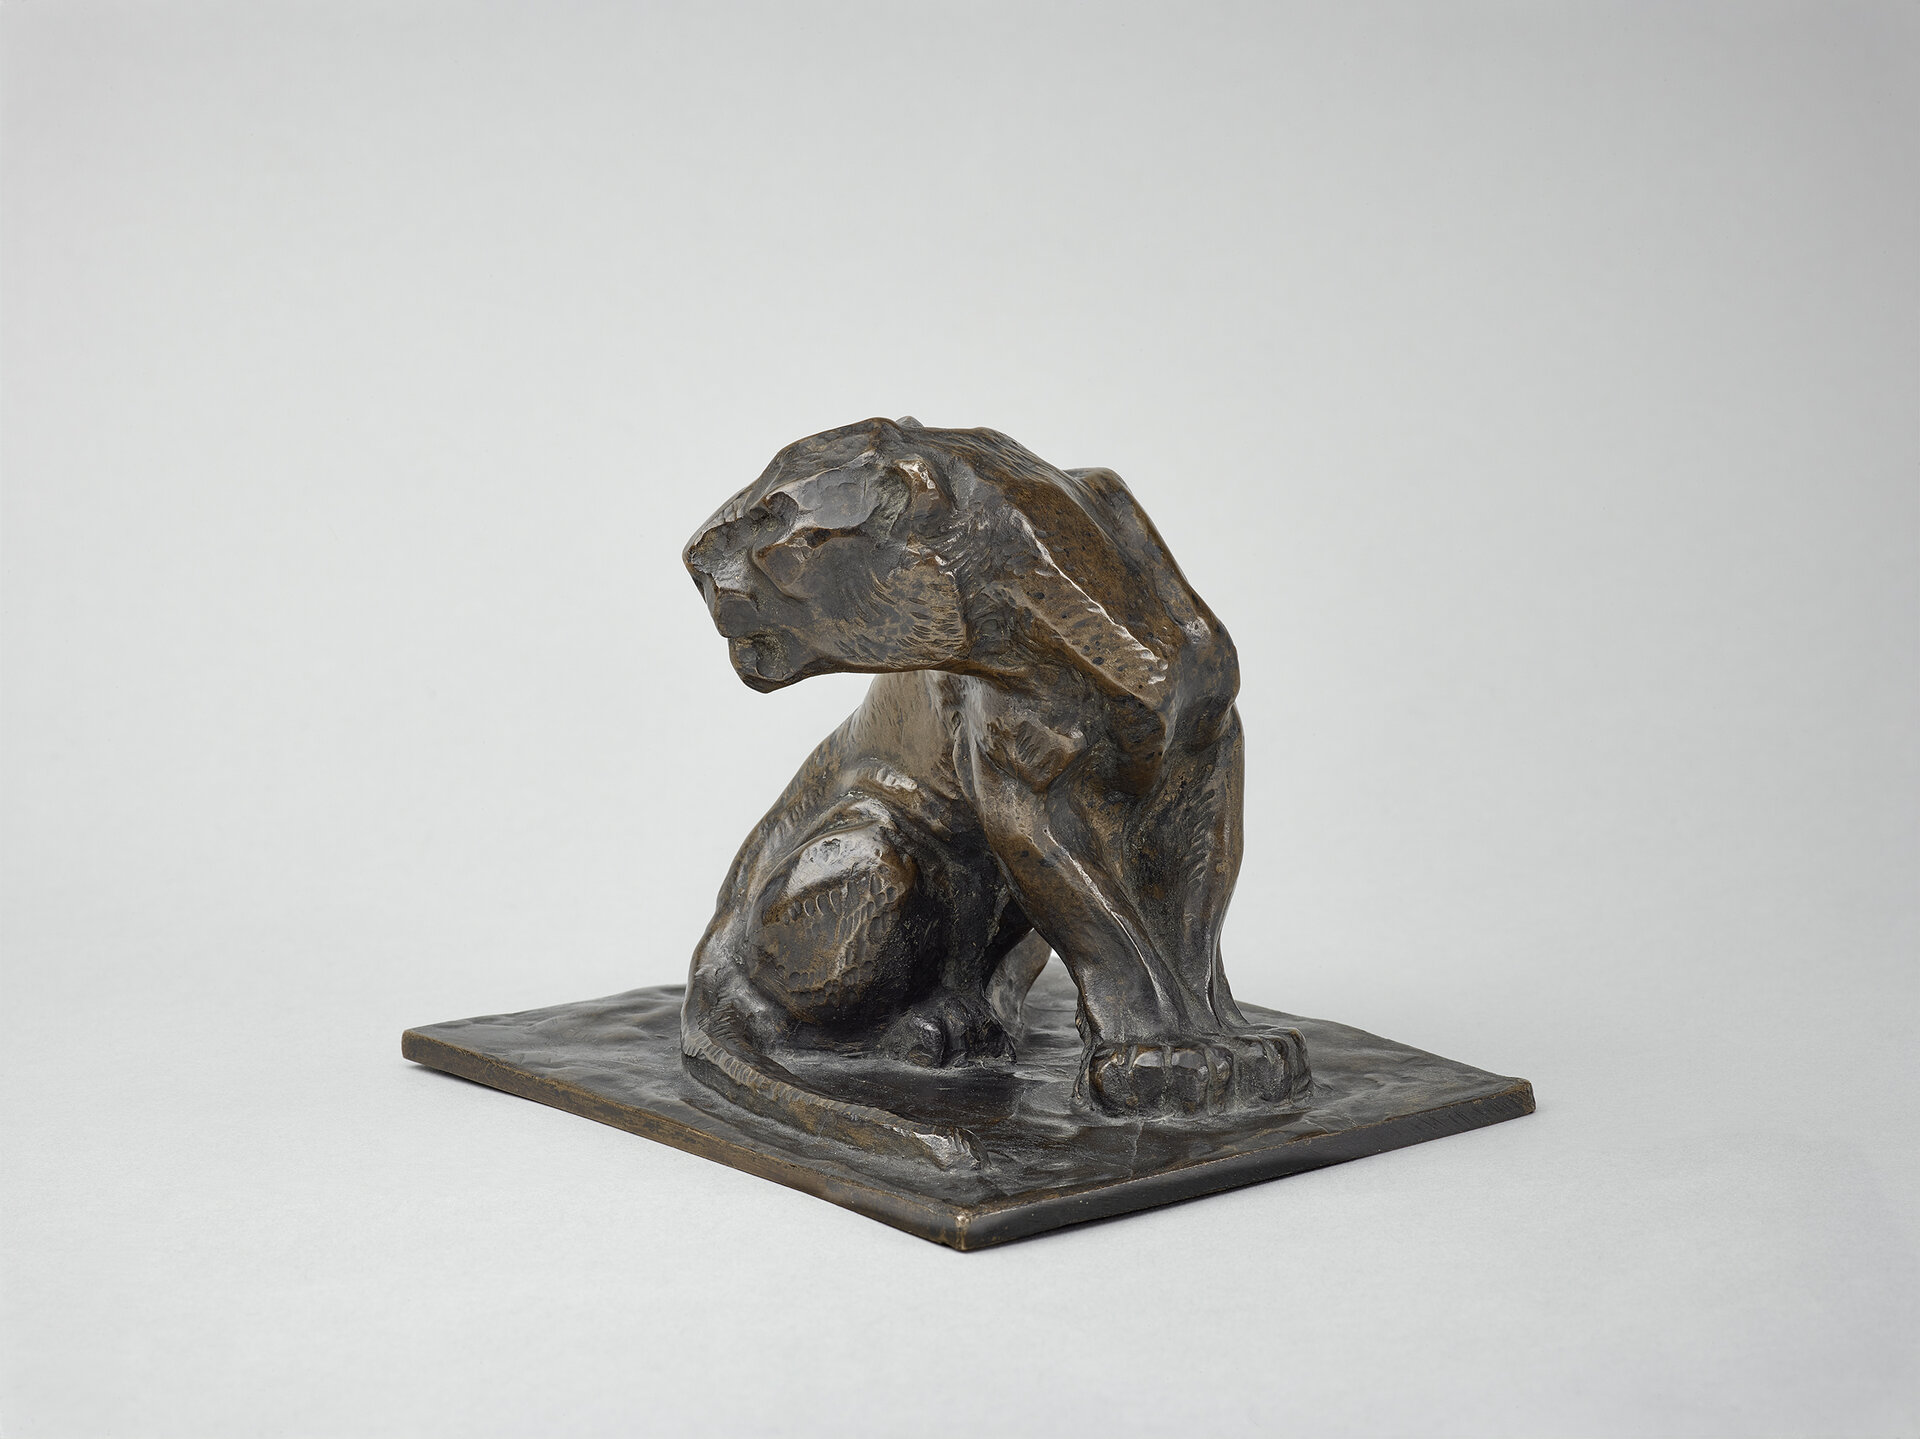 Abgebildet ist die bräunliche Bronzeplastik "Der Panther" von Franz Marc. Der Hintergrund ist hellgrau.